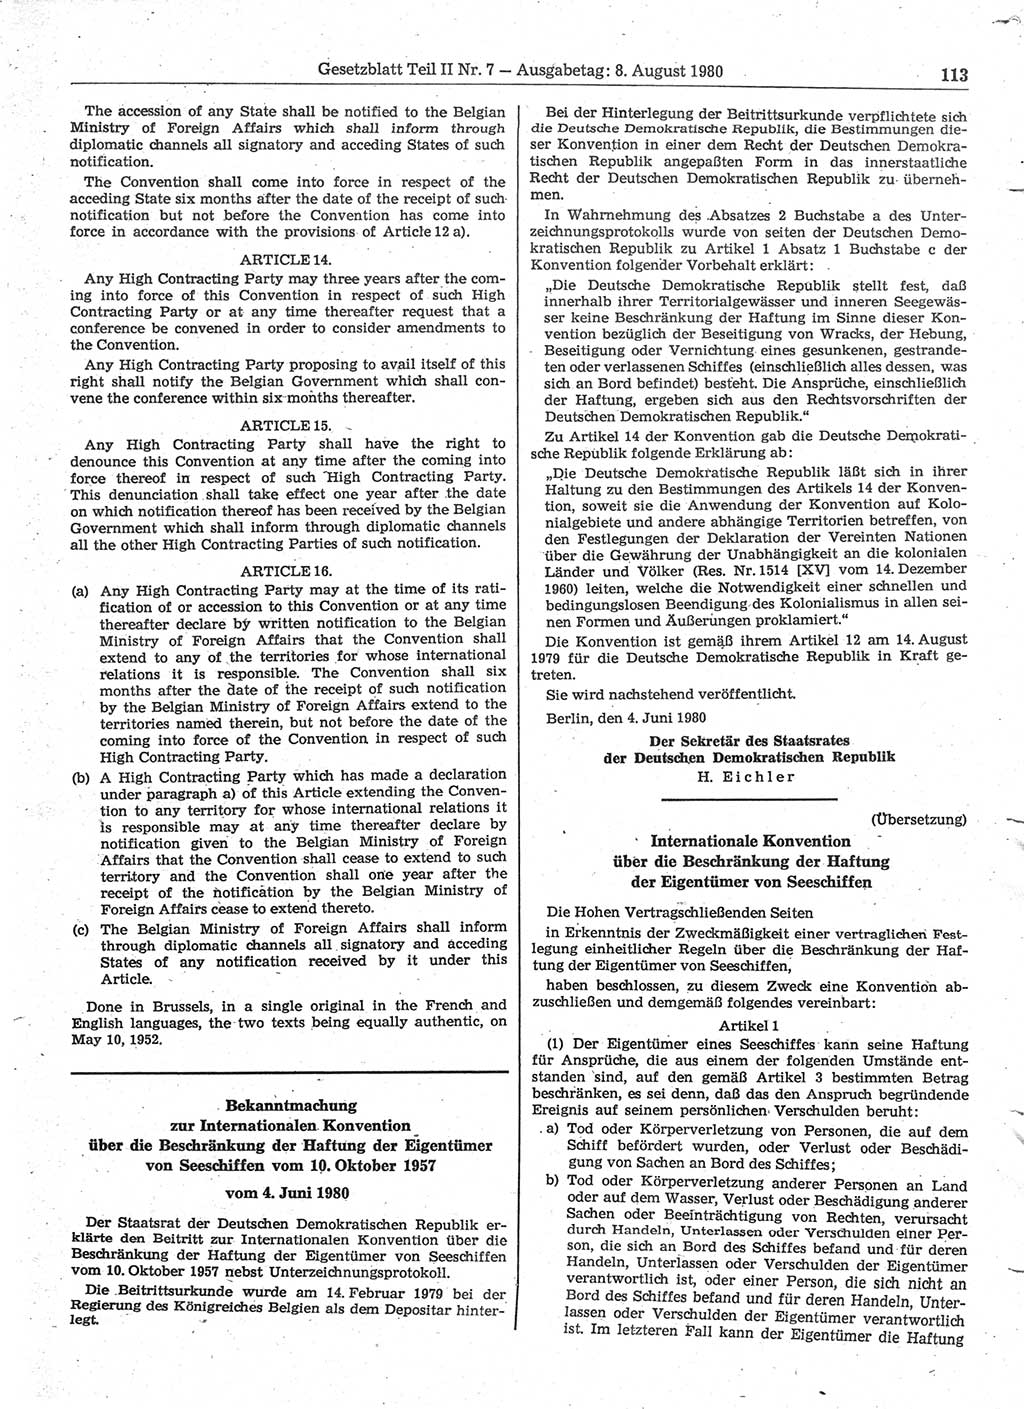 Gesetzblatt (GBl.) der Deutschen Demokratischen Republik (DDR) Teil ⅠⅠ 1980, Seite 113 (GBl. DDR ⅠⅠ 1980, S. 113)